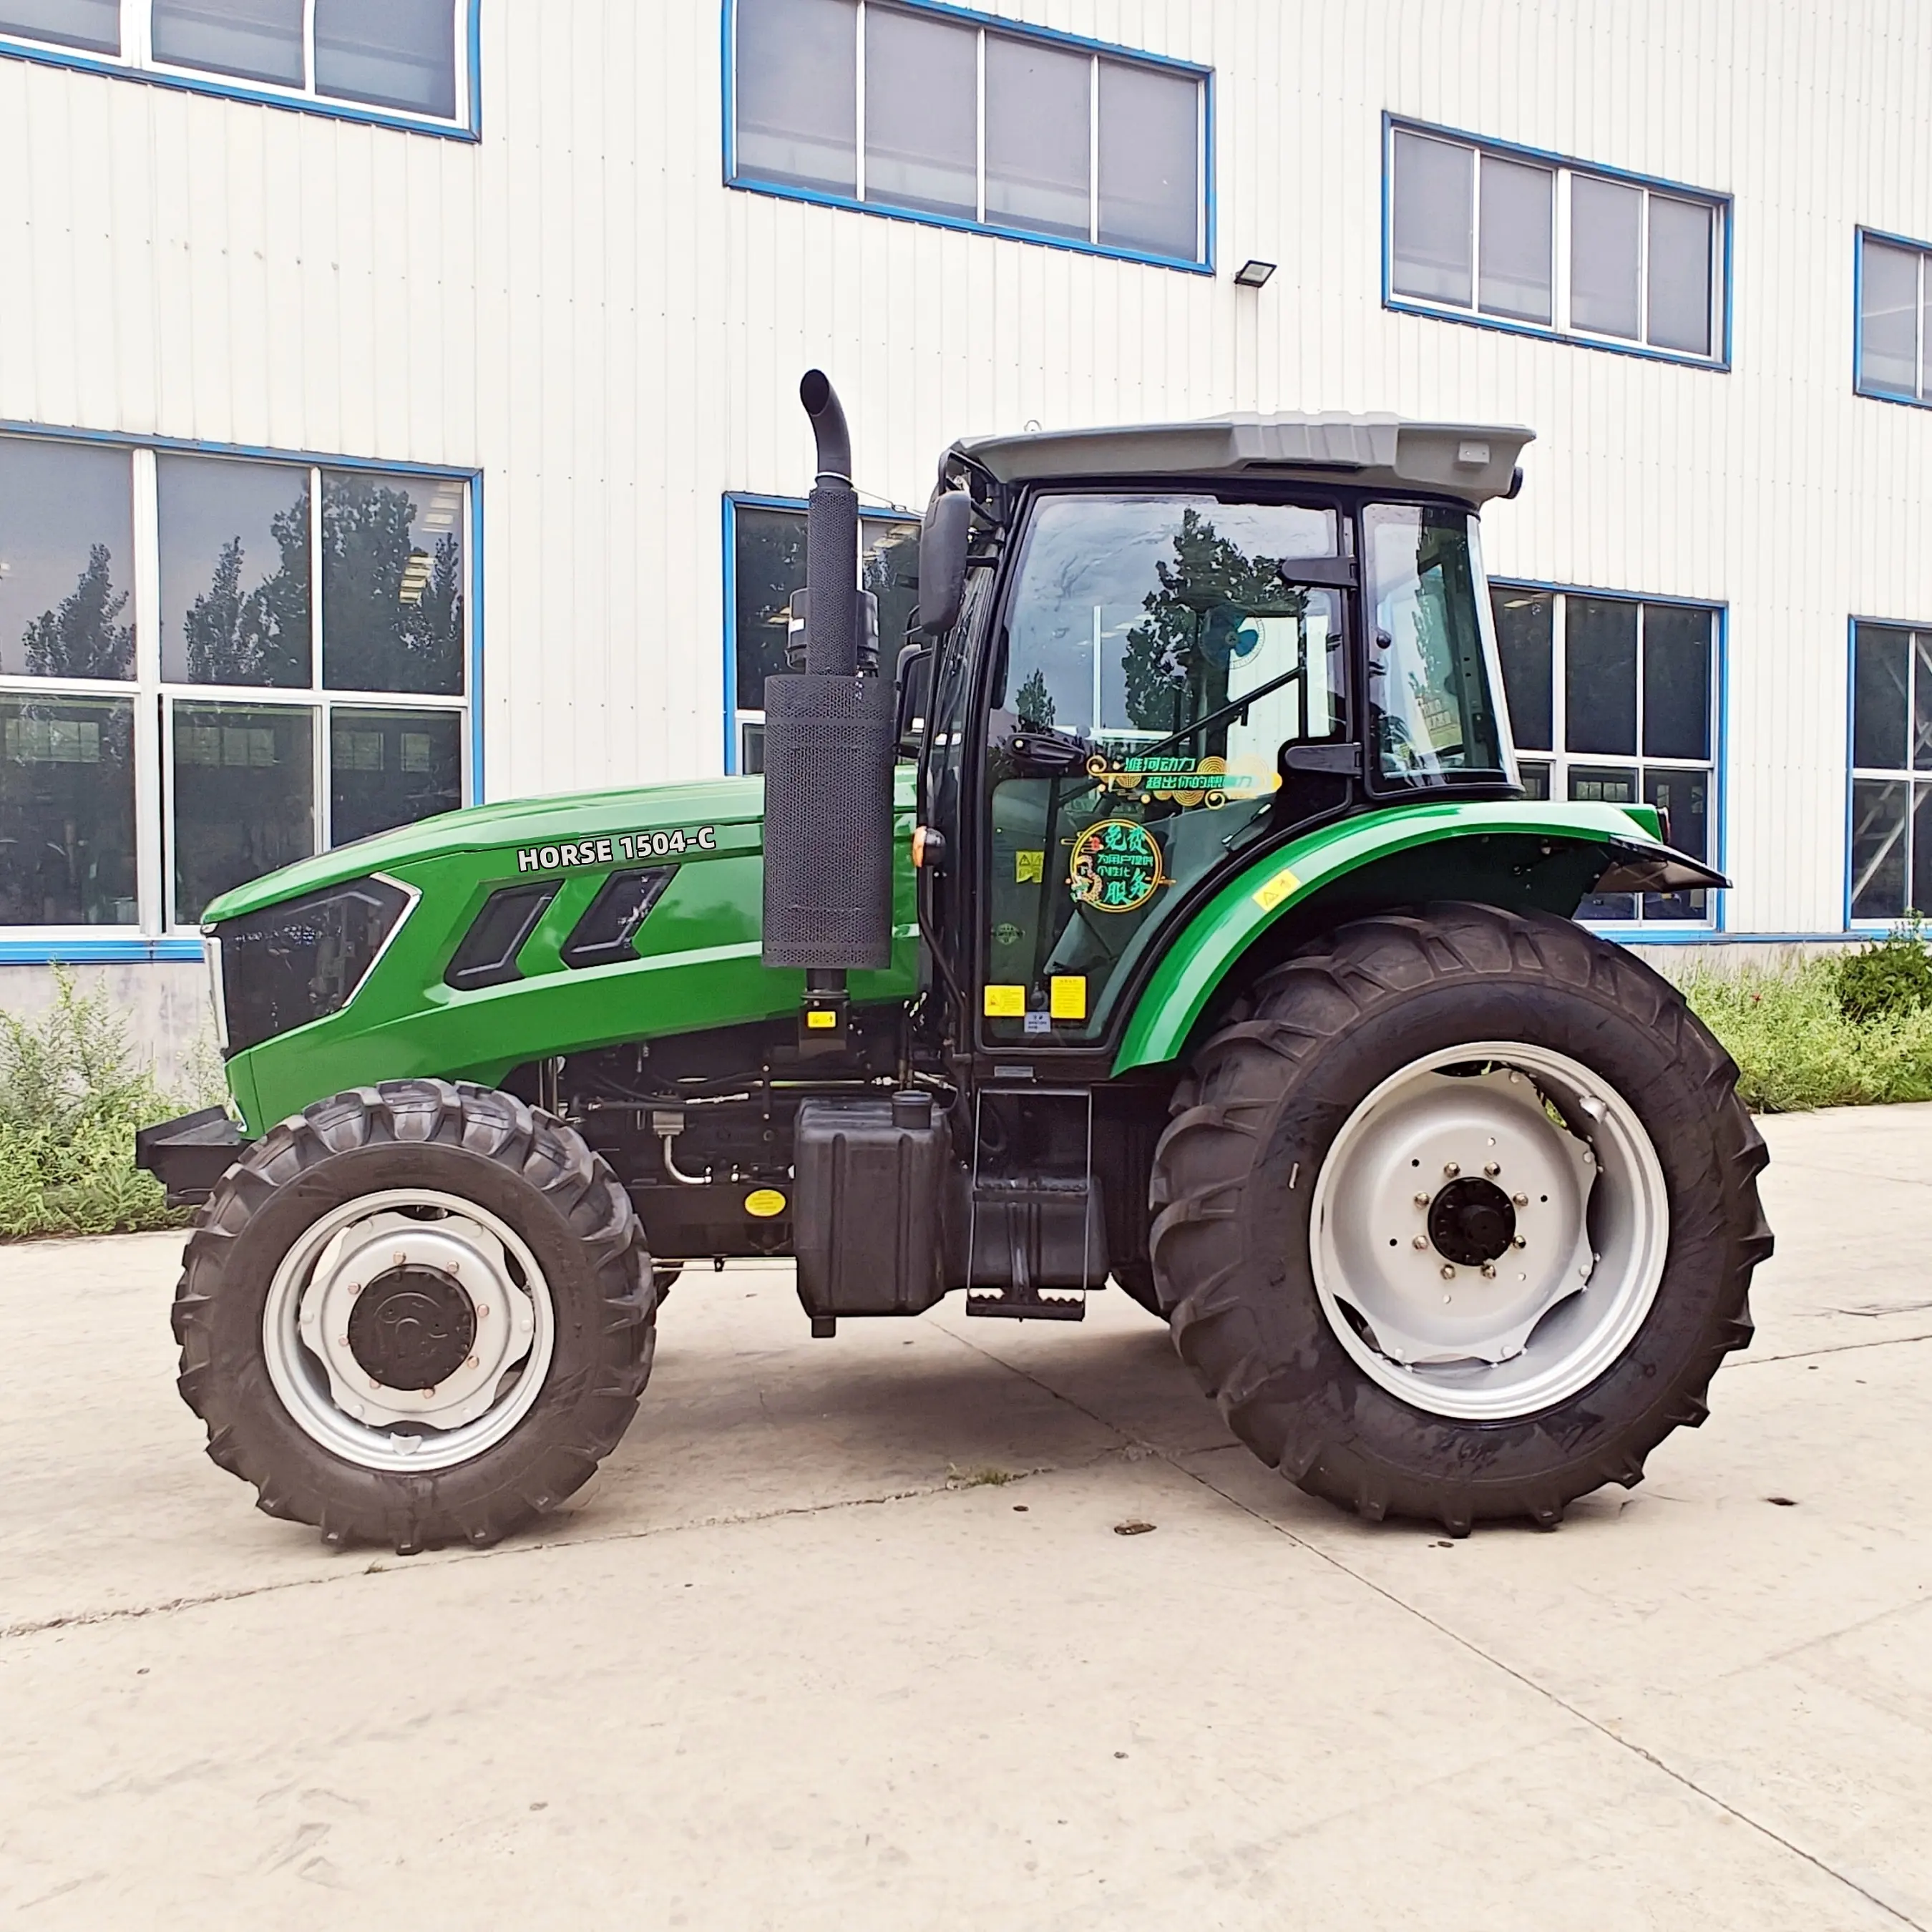 Traktor pertanian tugas berat adaptor lawnmowe traktor rumput london dengan 3 titik hitch